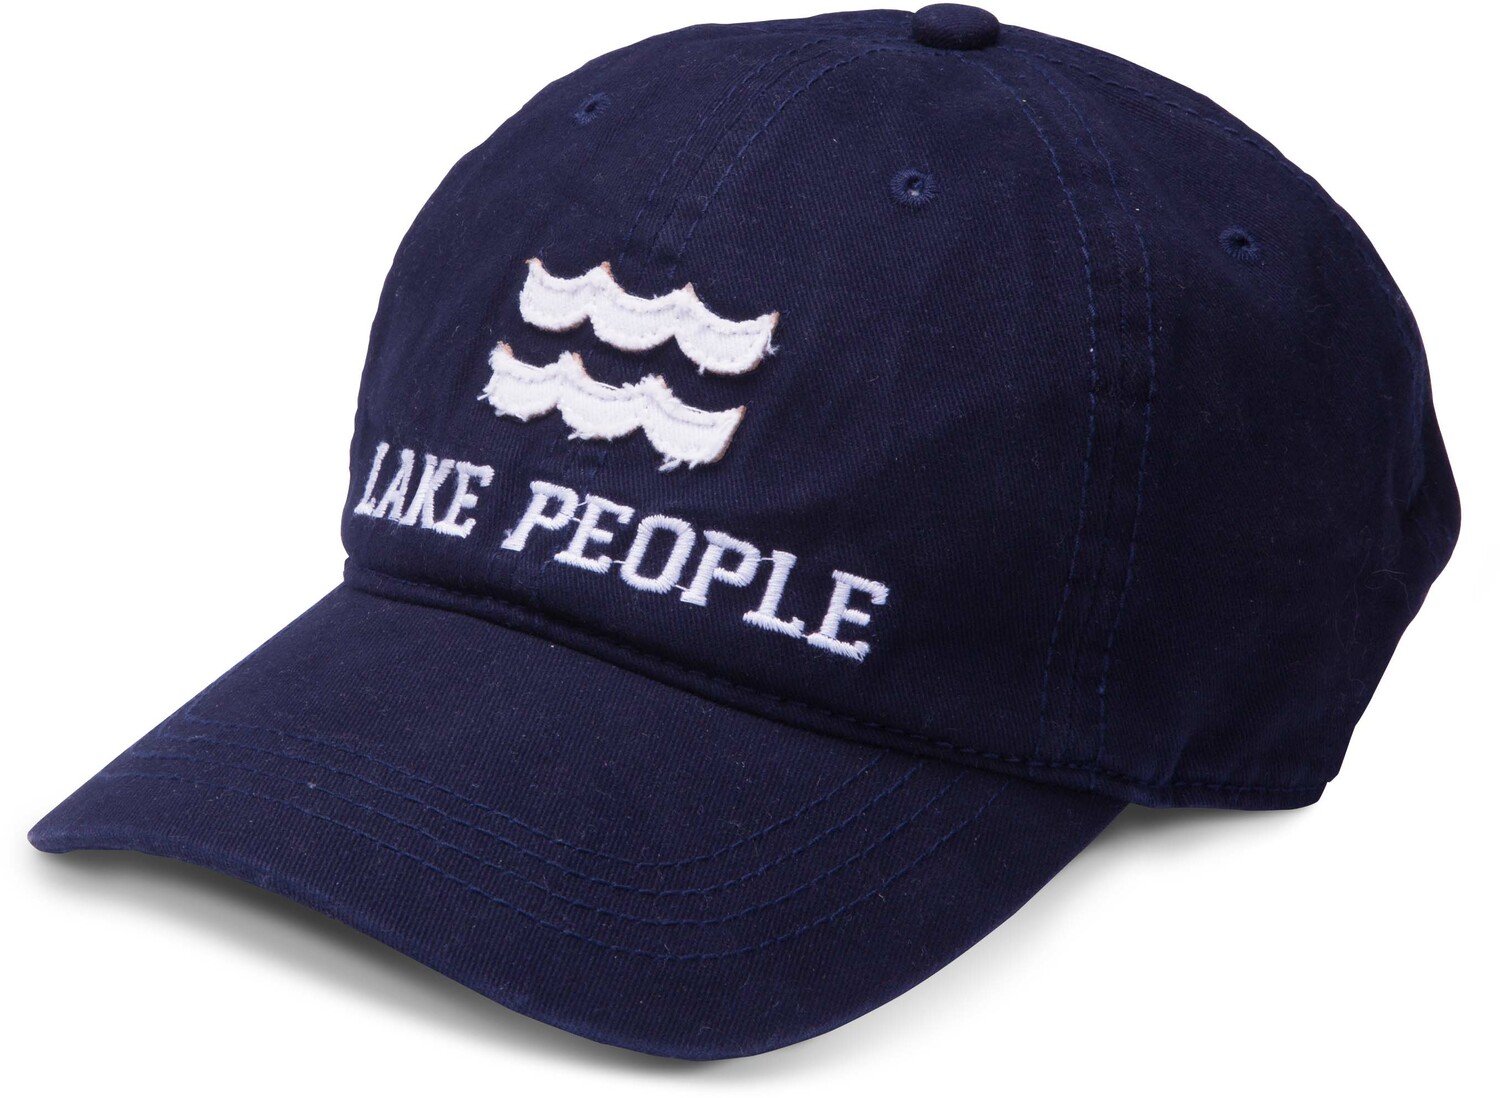 Lake People by We People - Lake People - Navy Adjustable Hat